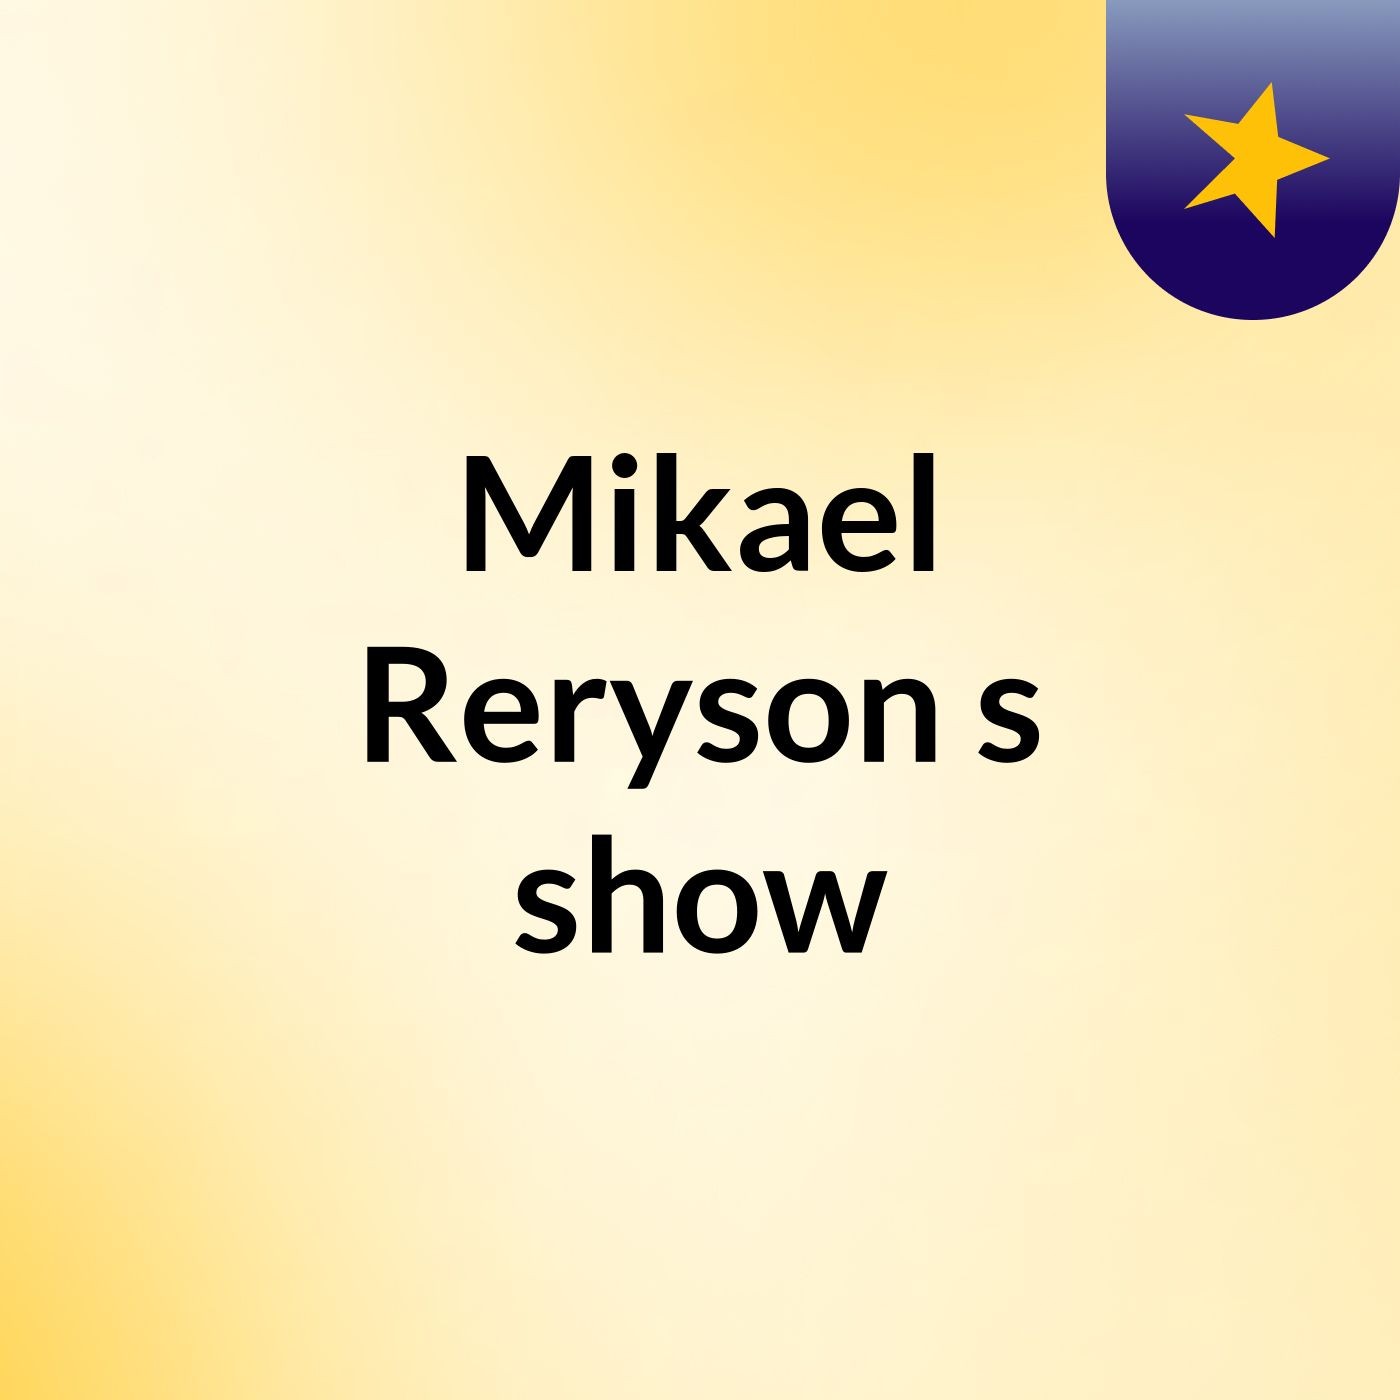 Mikael Reryson's show